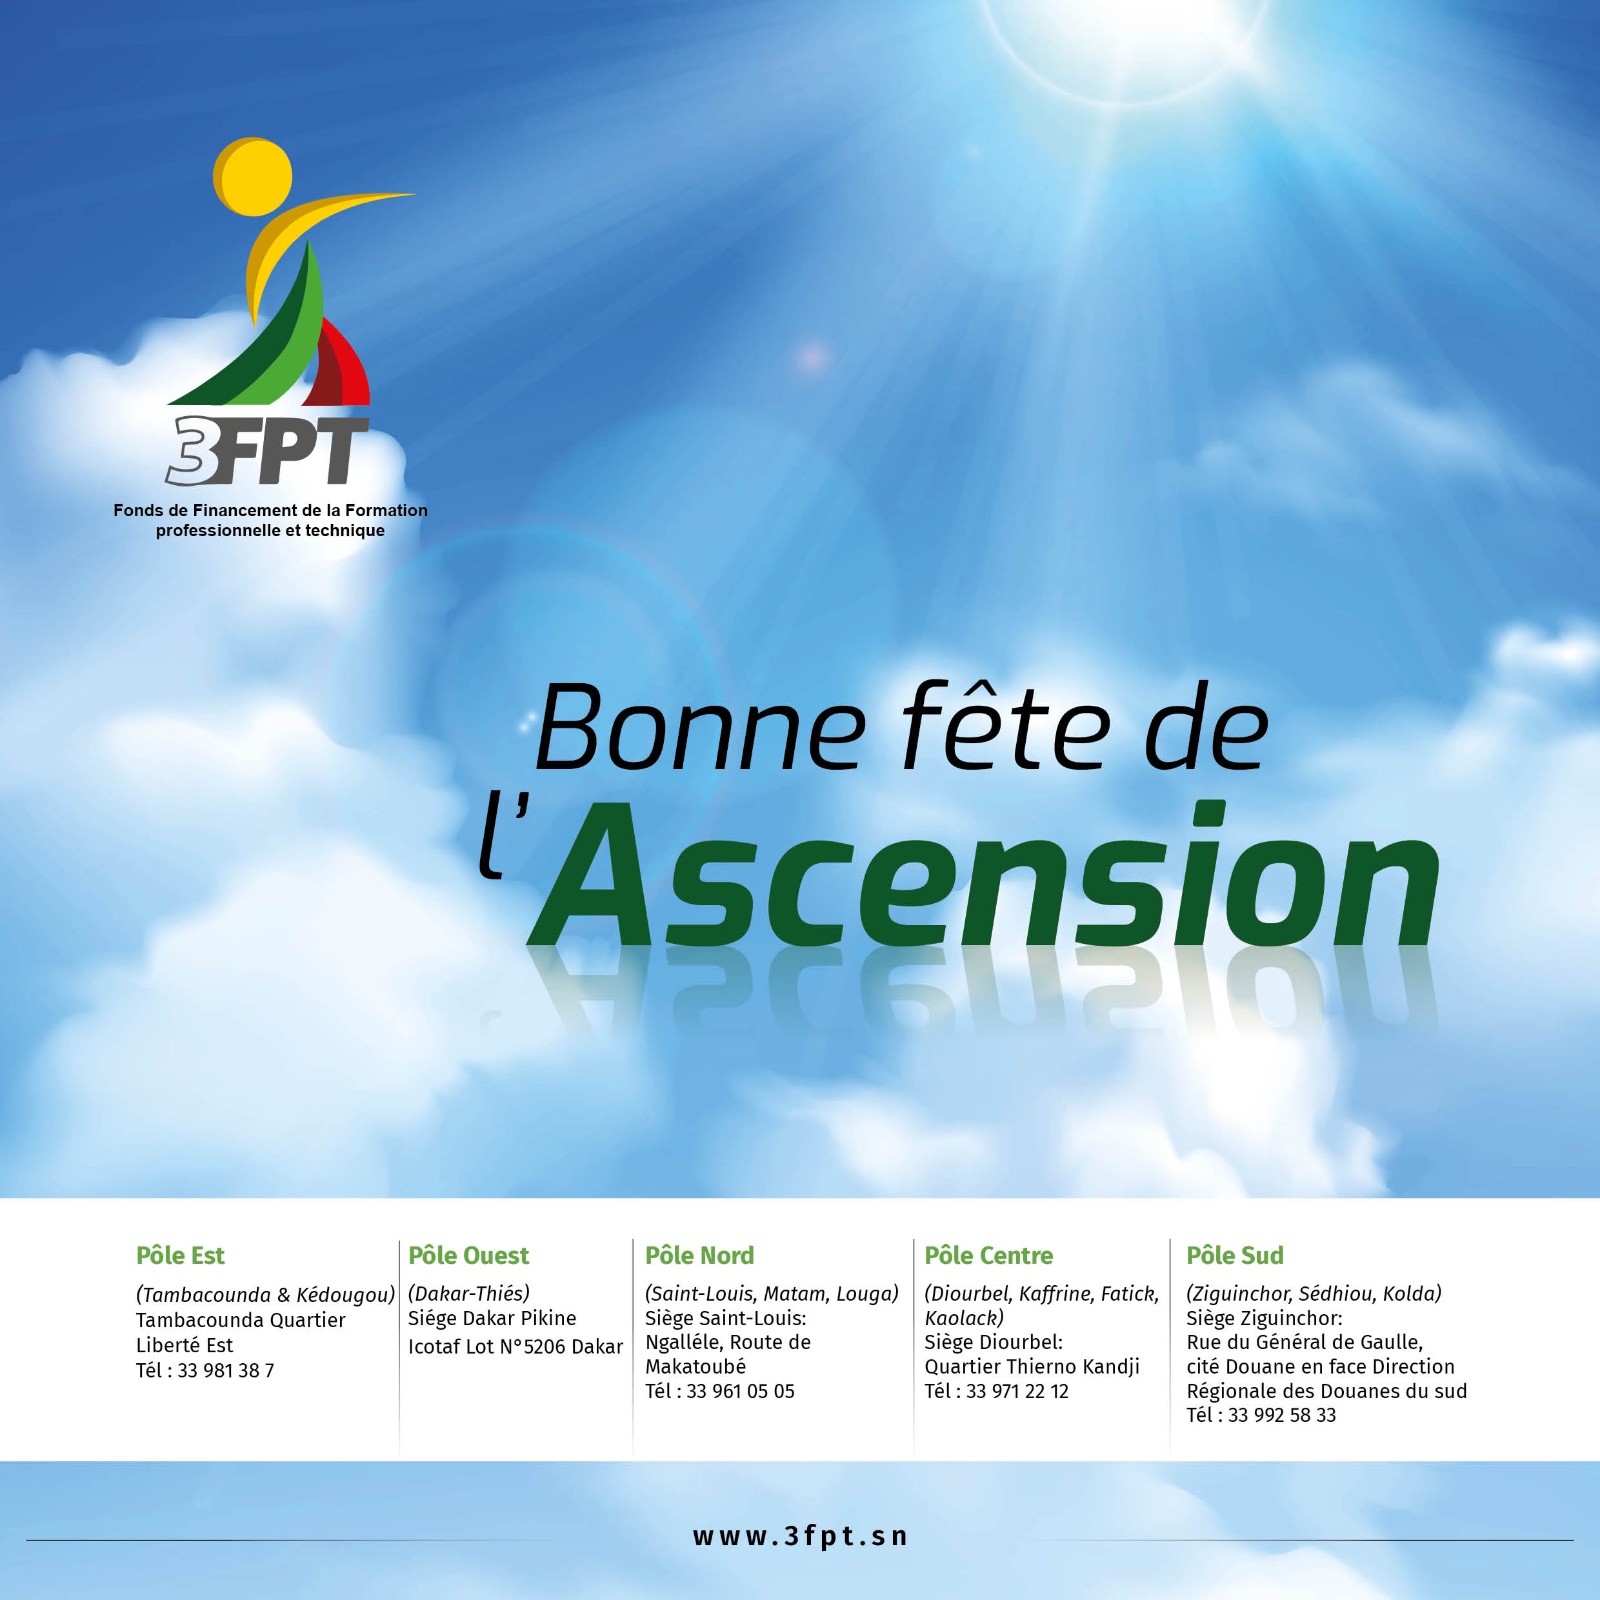 Le 3FPT souhaite à toute la communauté chrétienne une bonne fête de l’Ascension.